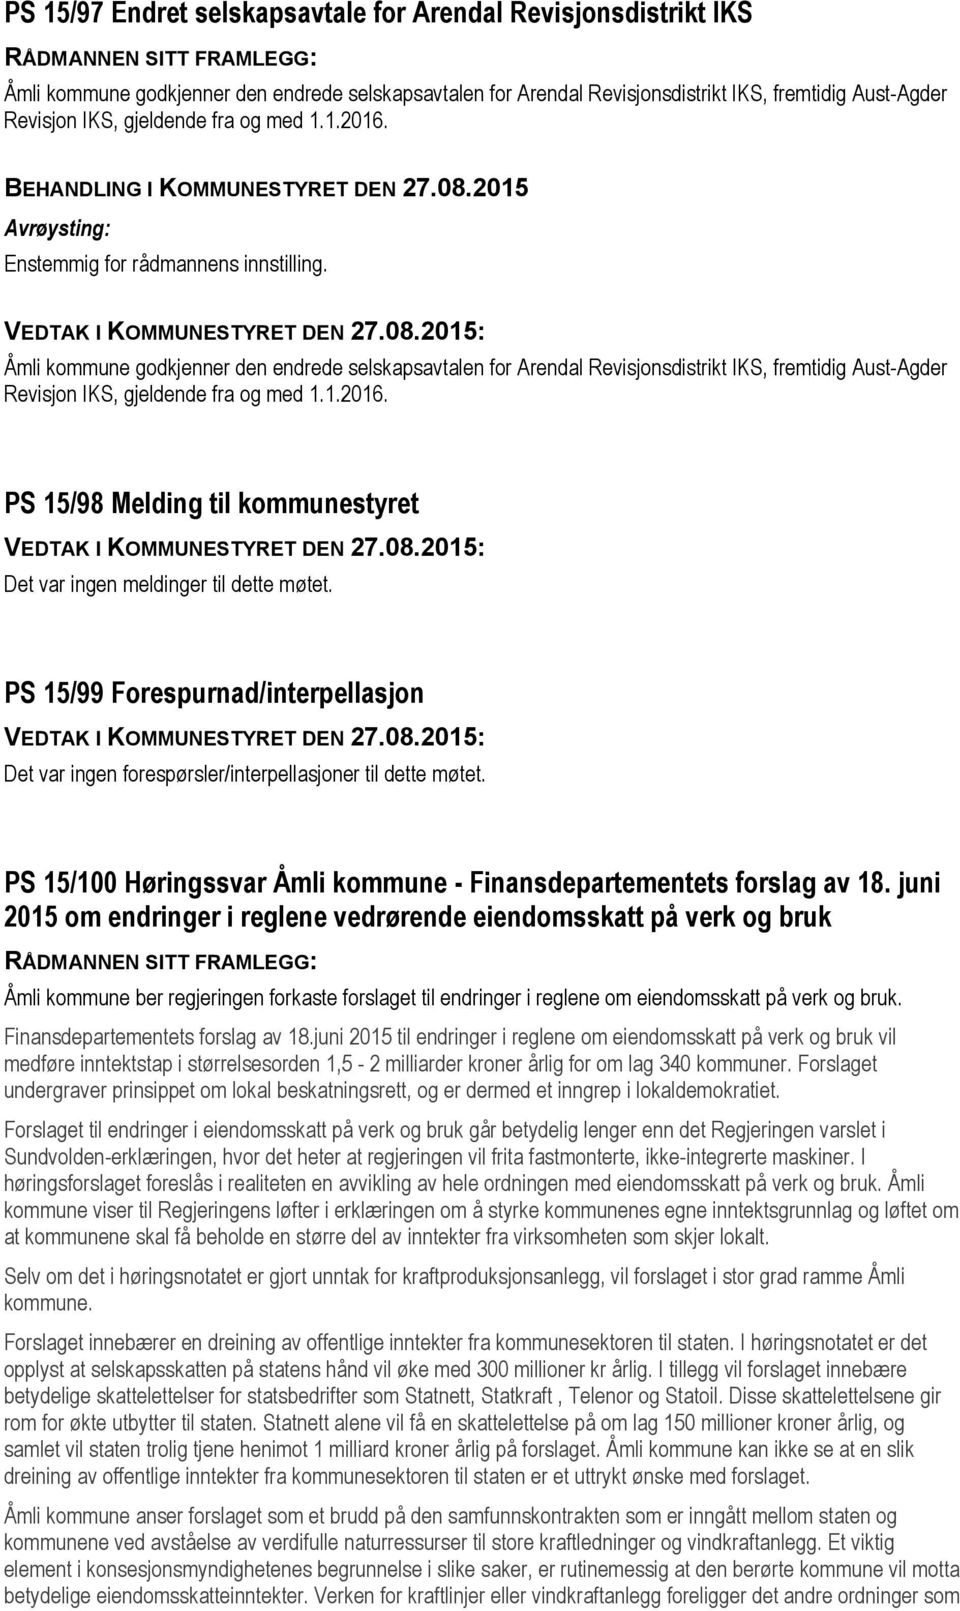 Åmli kommune godkjenner den endrede selskapsavtalen for Arendal Revisjonsdistrikt IKS, fremtidig Aust-Agder Revisjon IKS, gjeldende fra og med 1.1.2016.